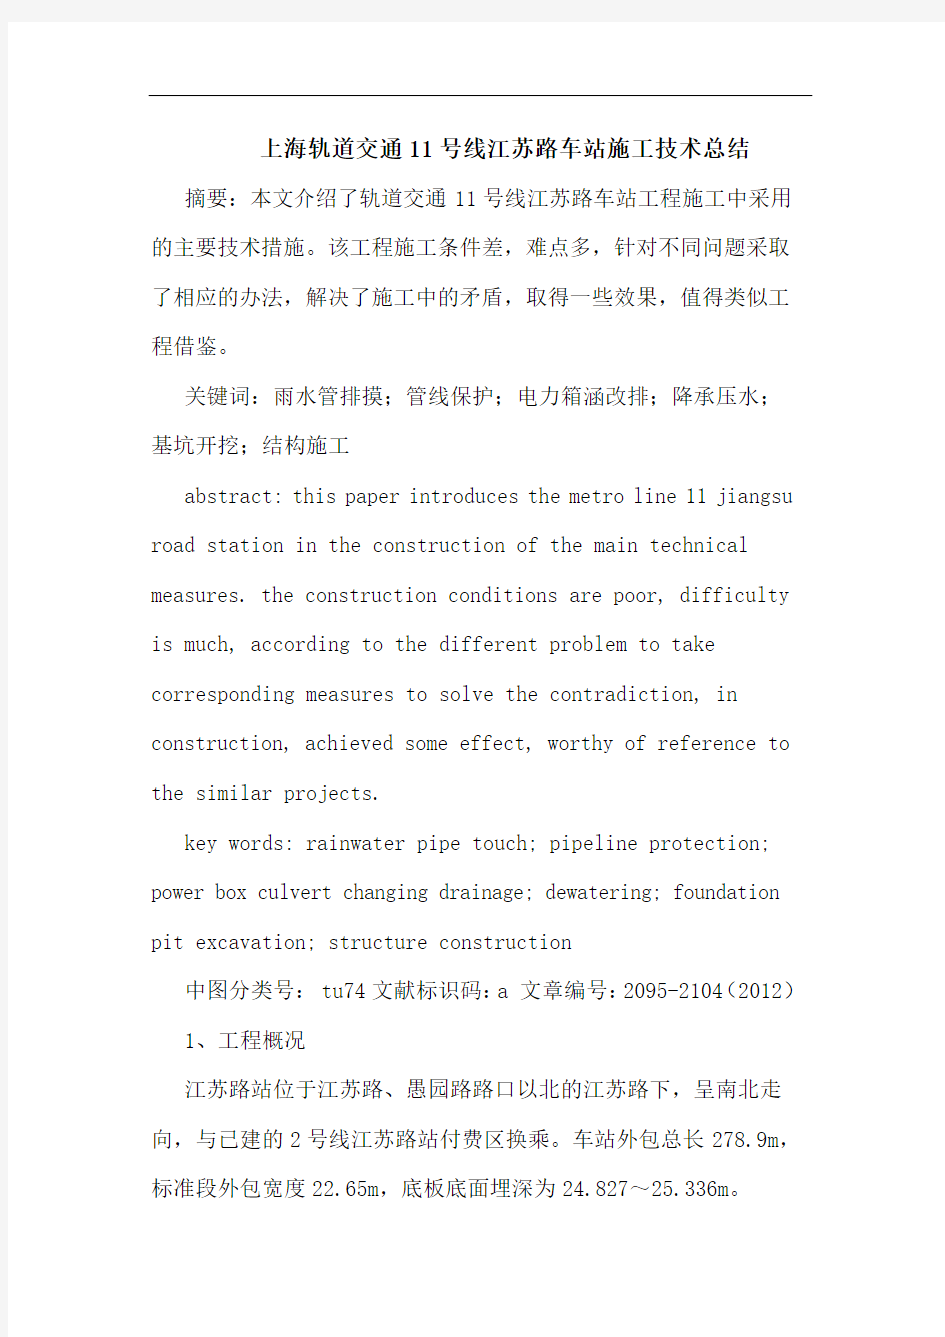 上海轨道交通11号线江苏路车站施工技术总结